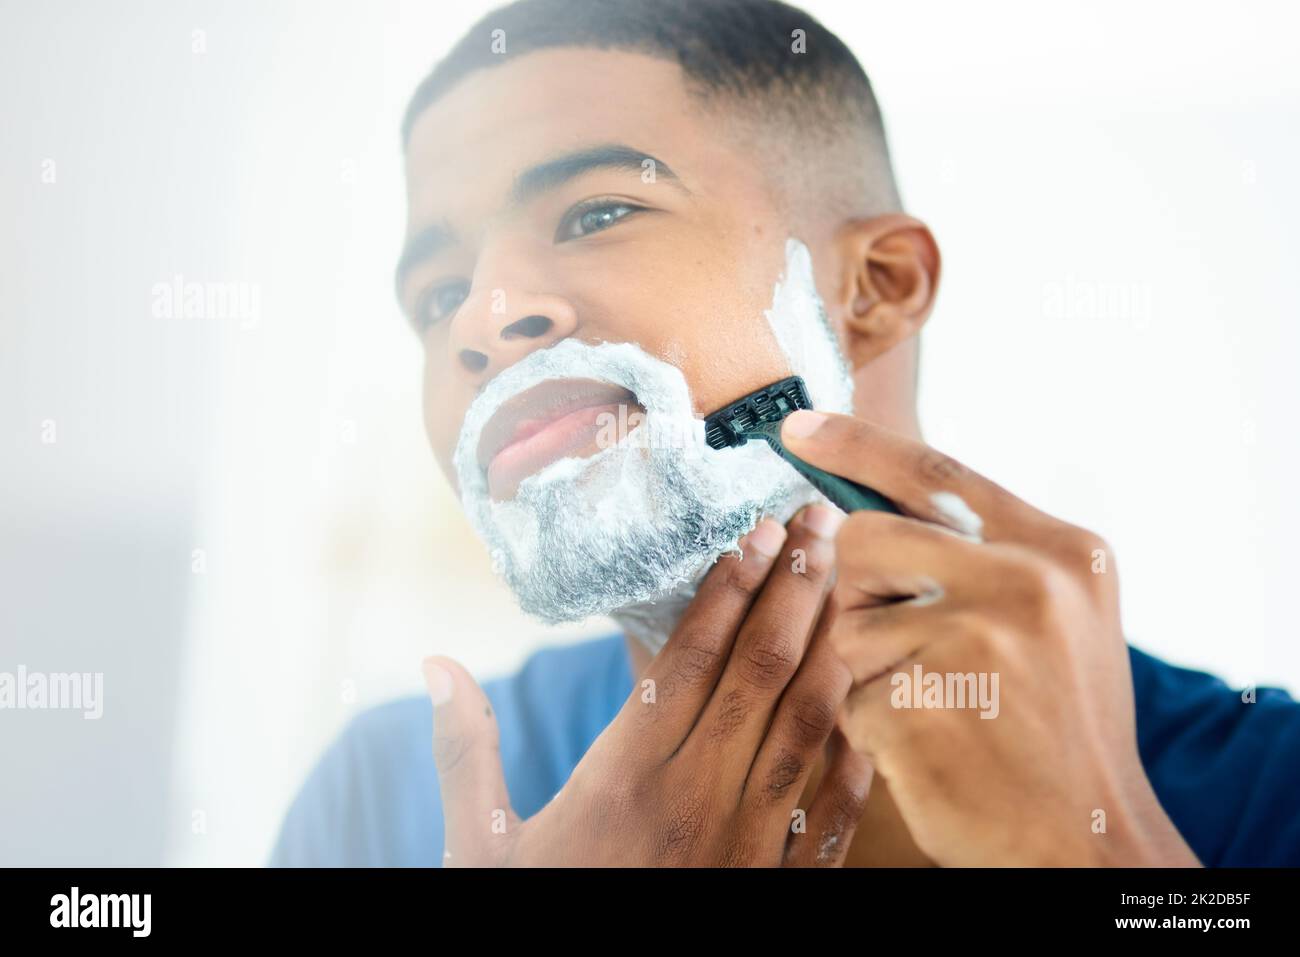 Bin heute Morgen in der Stimmung aufgewacht, sich zu rasieren. Aufnahme eines jungen Mannes, der sich fokussiert, während er sein Gesicht rasiert. Stockfoto